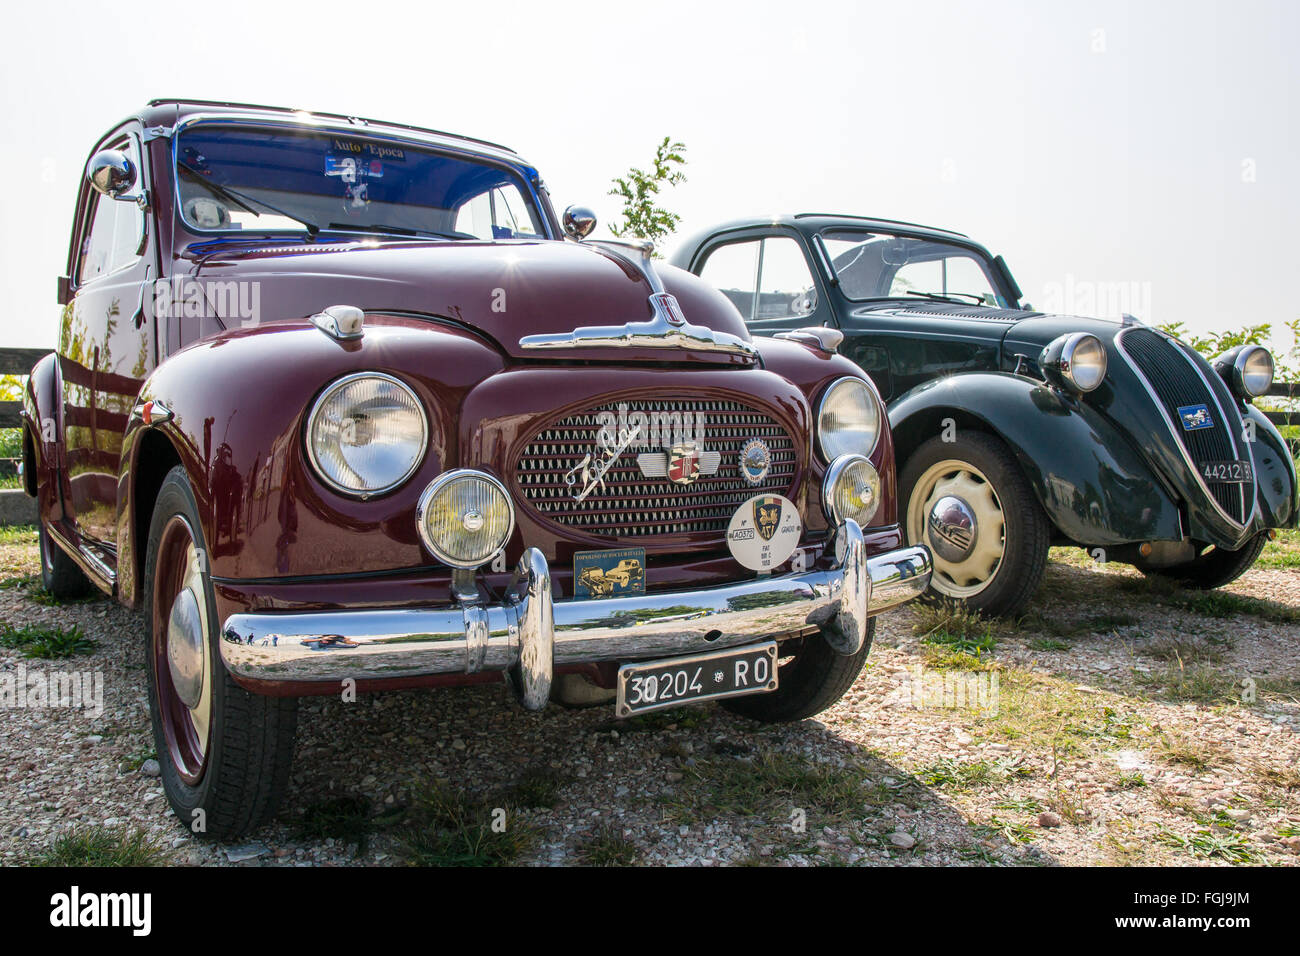 VERONA, Italia - 27 settembre: Topolino Automobile Club Italia organizza un incontro sul Lago di Garda domenica 27 settembre, 2014. Auto e Foto Stock